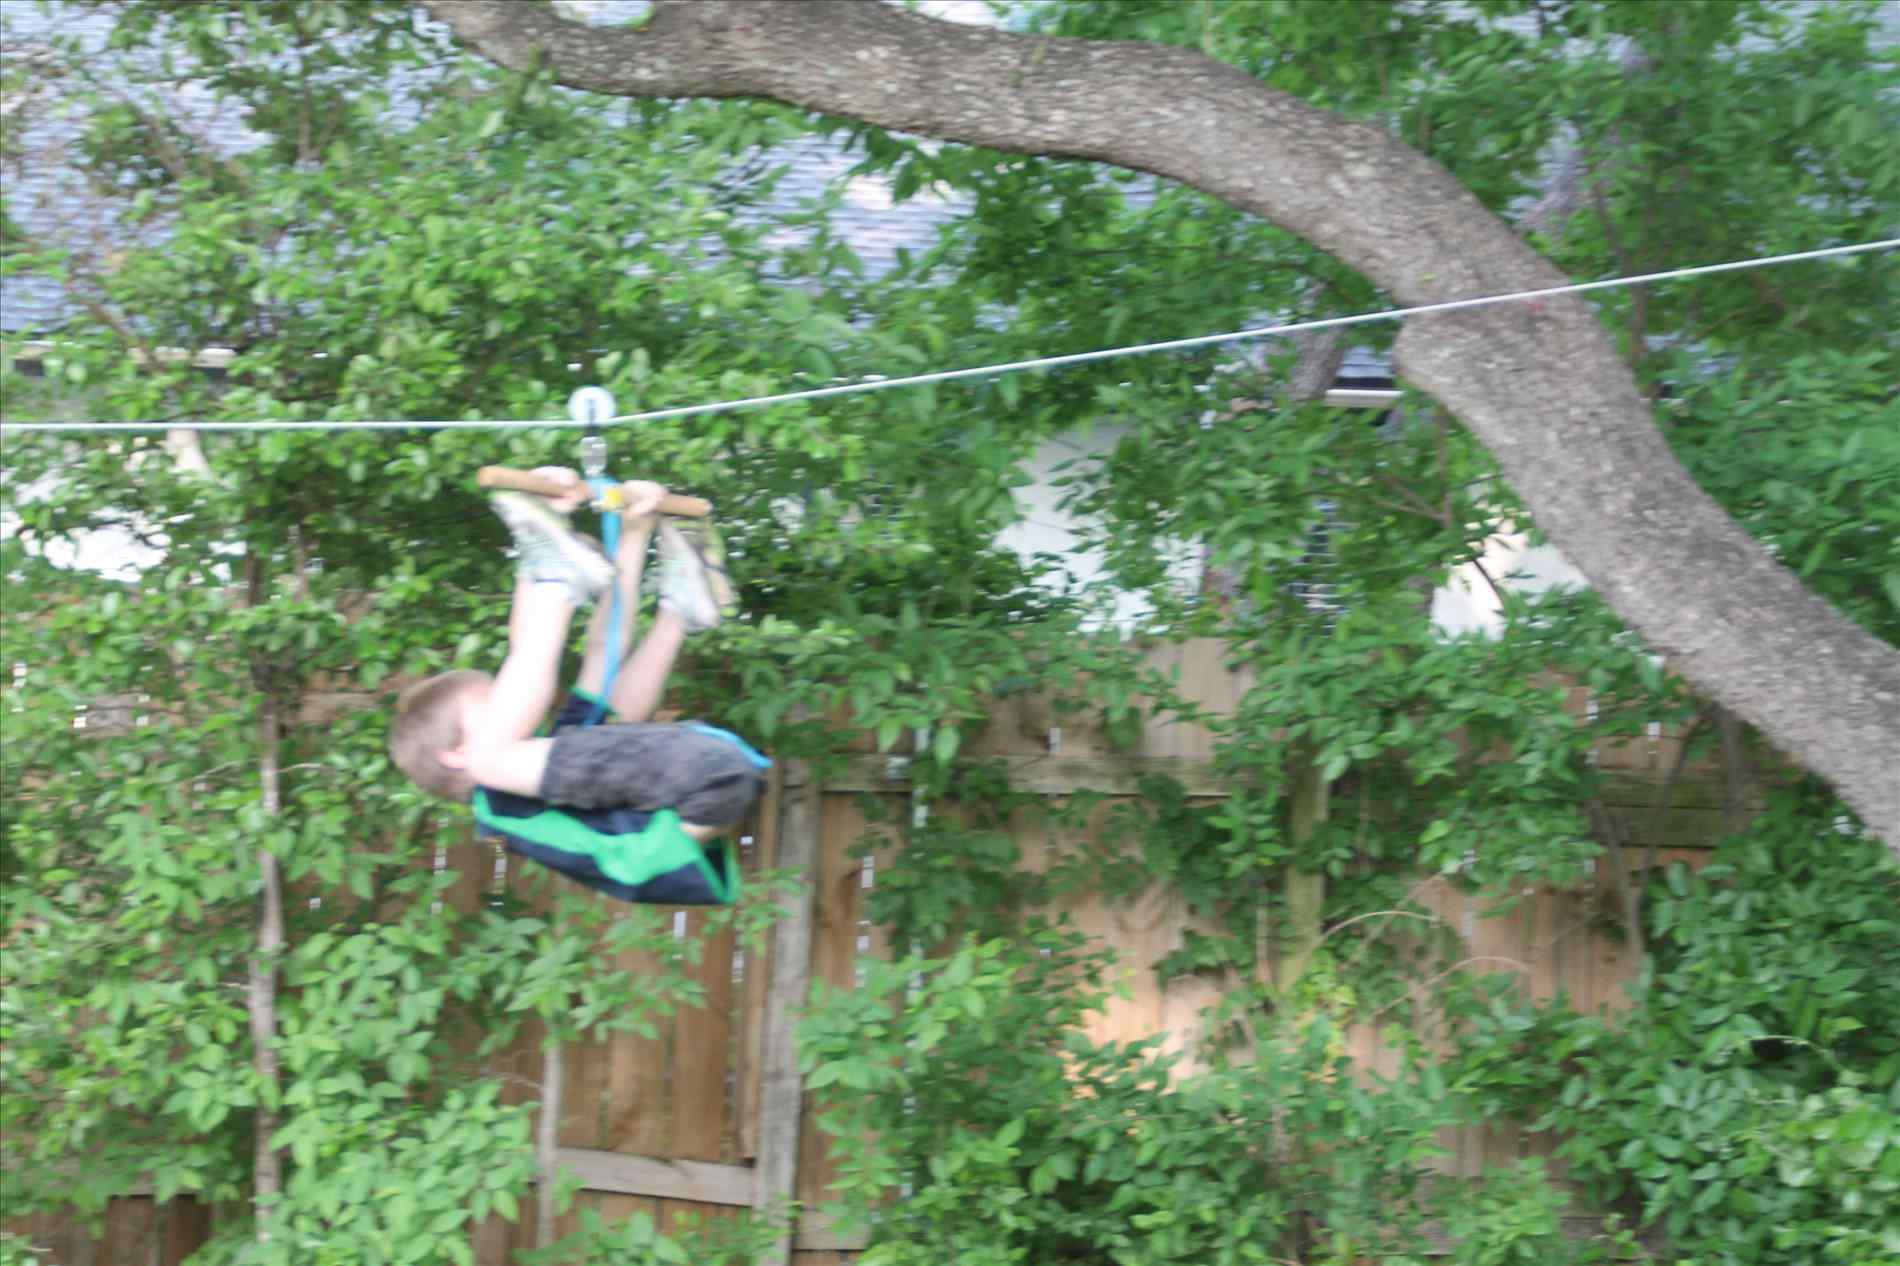 Backyard Zip Line Diy
 How To Build A Zipline In Your Backyard